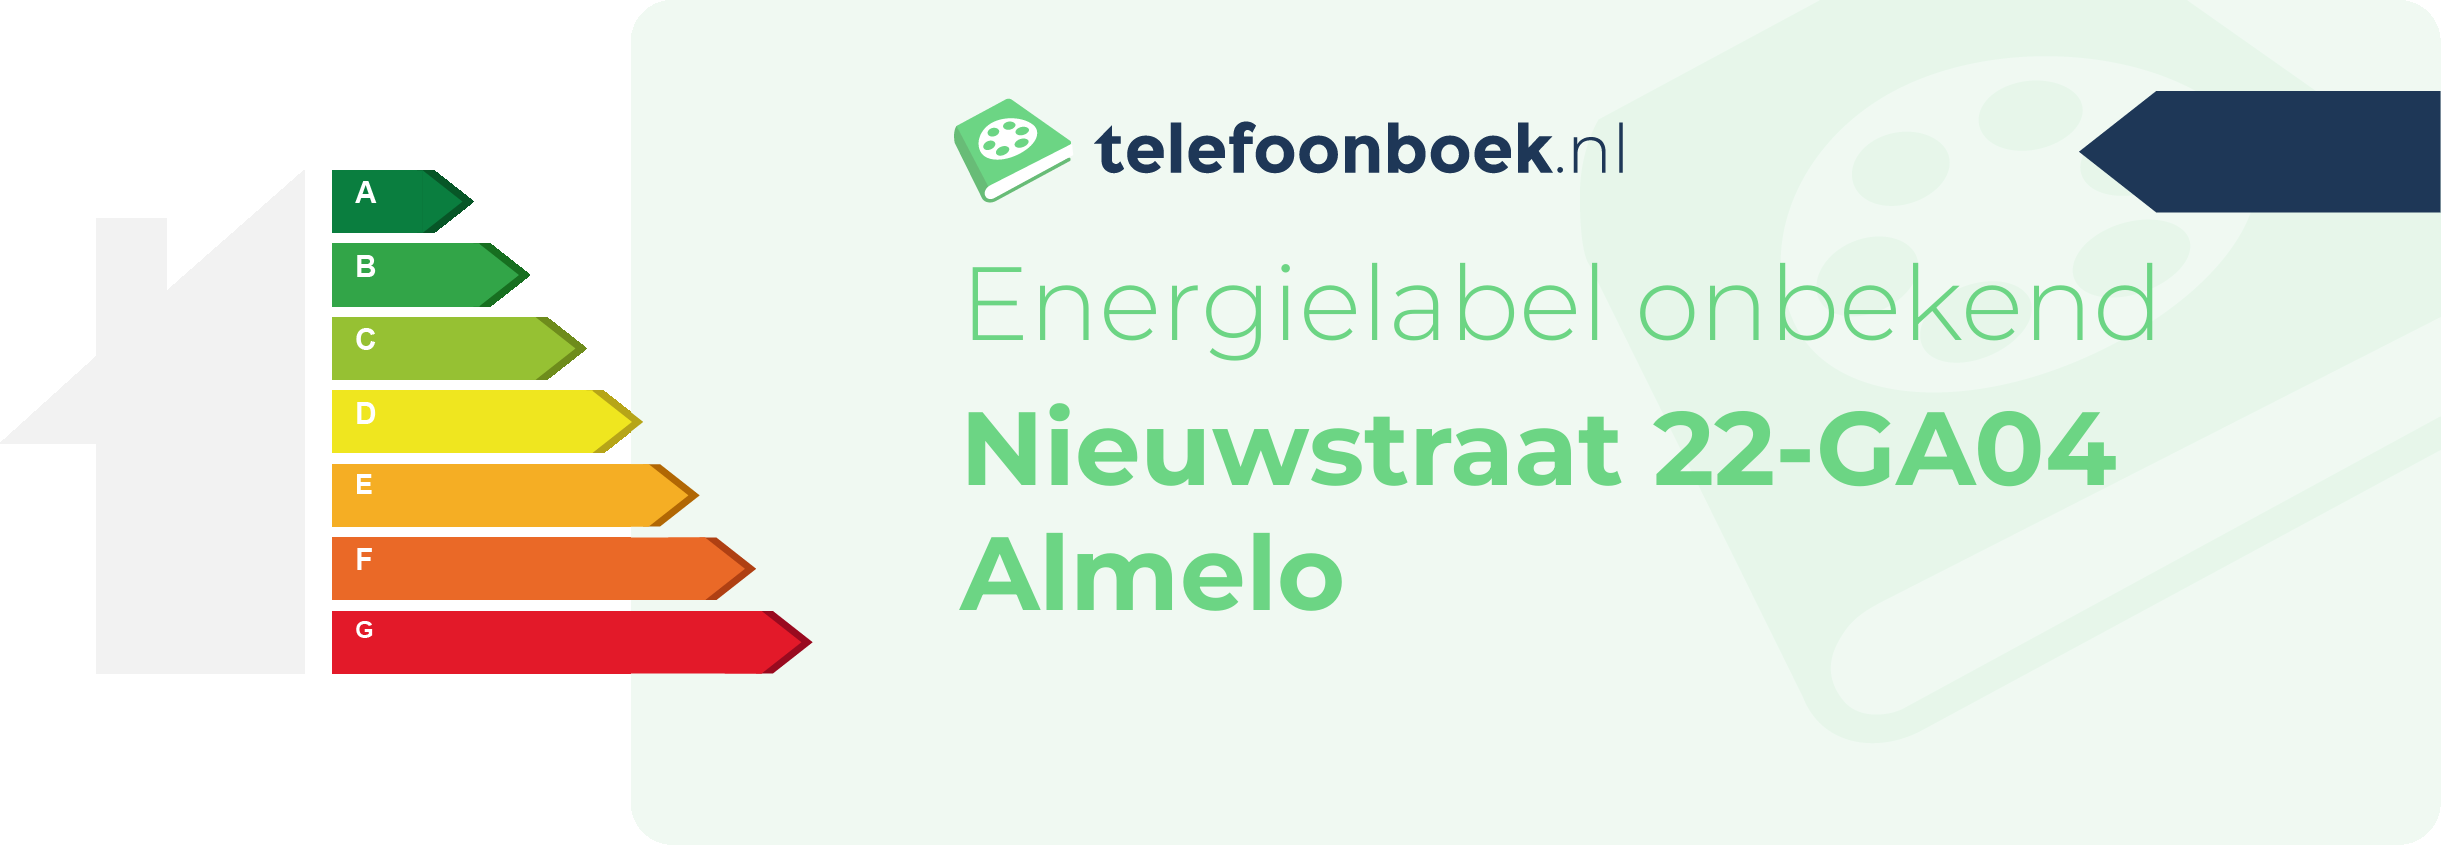 Energielabel Nieuwstraat 22-GA04 Almelo